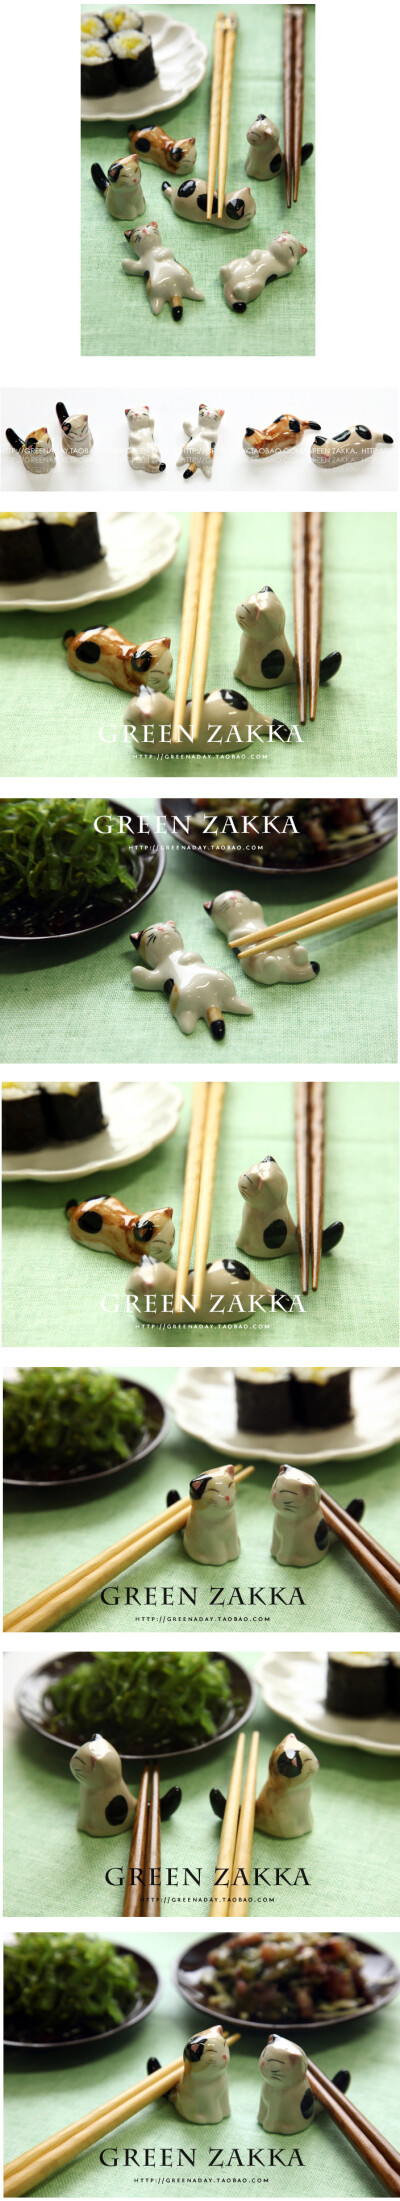 zakka 百态花猫 慵懒猫 手绘陶瓷餐具 筷架筷托